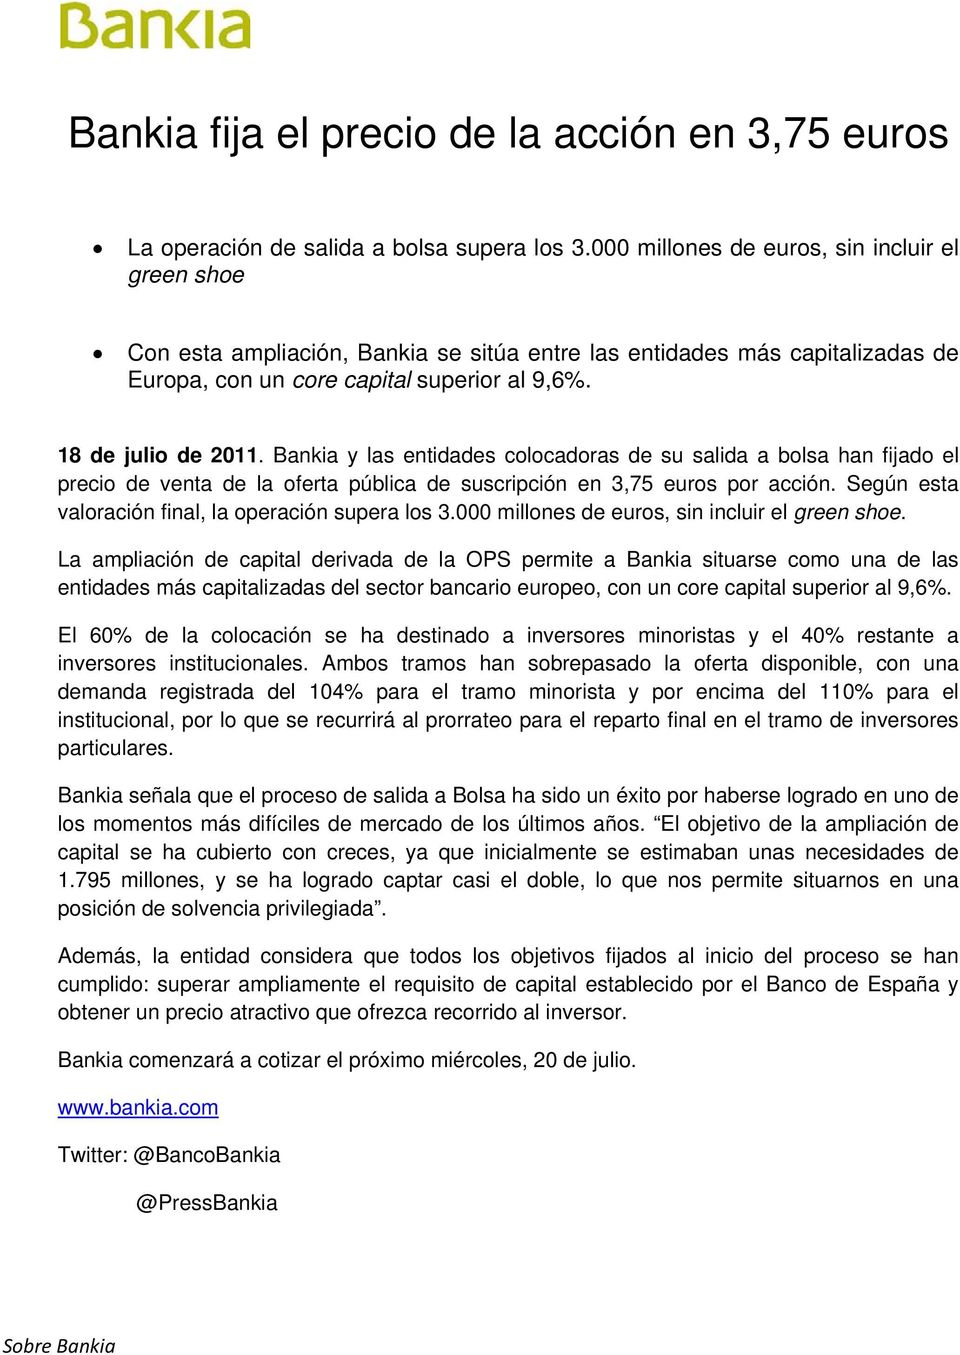 Bankia y las entidades colocadoras de su salida a bolsa han fijado el precio de venta de la oferta pública de suscripción en 3,75 euros por acción.